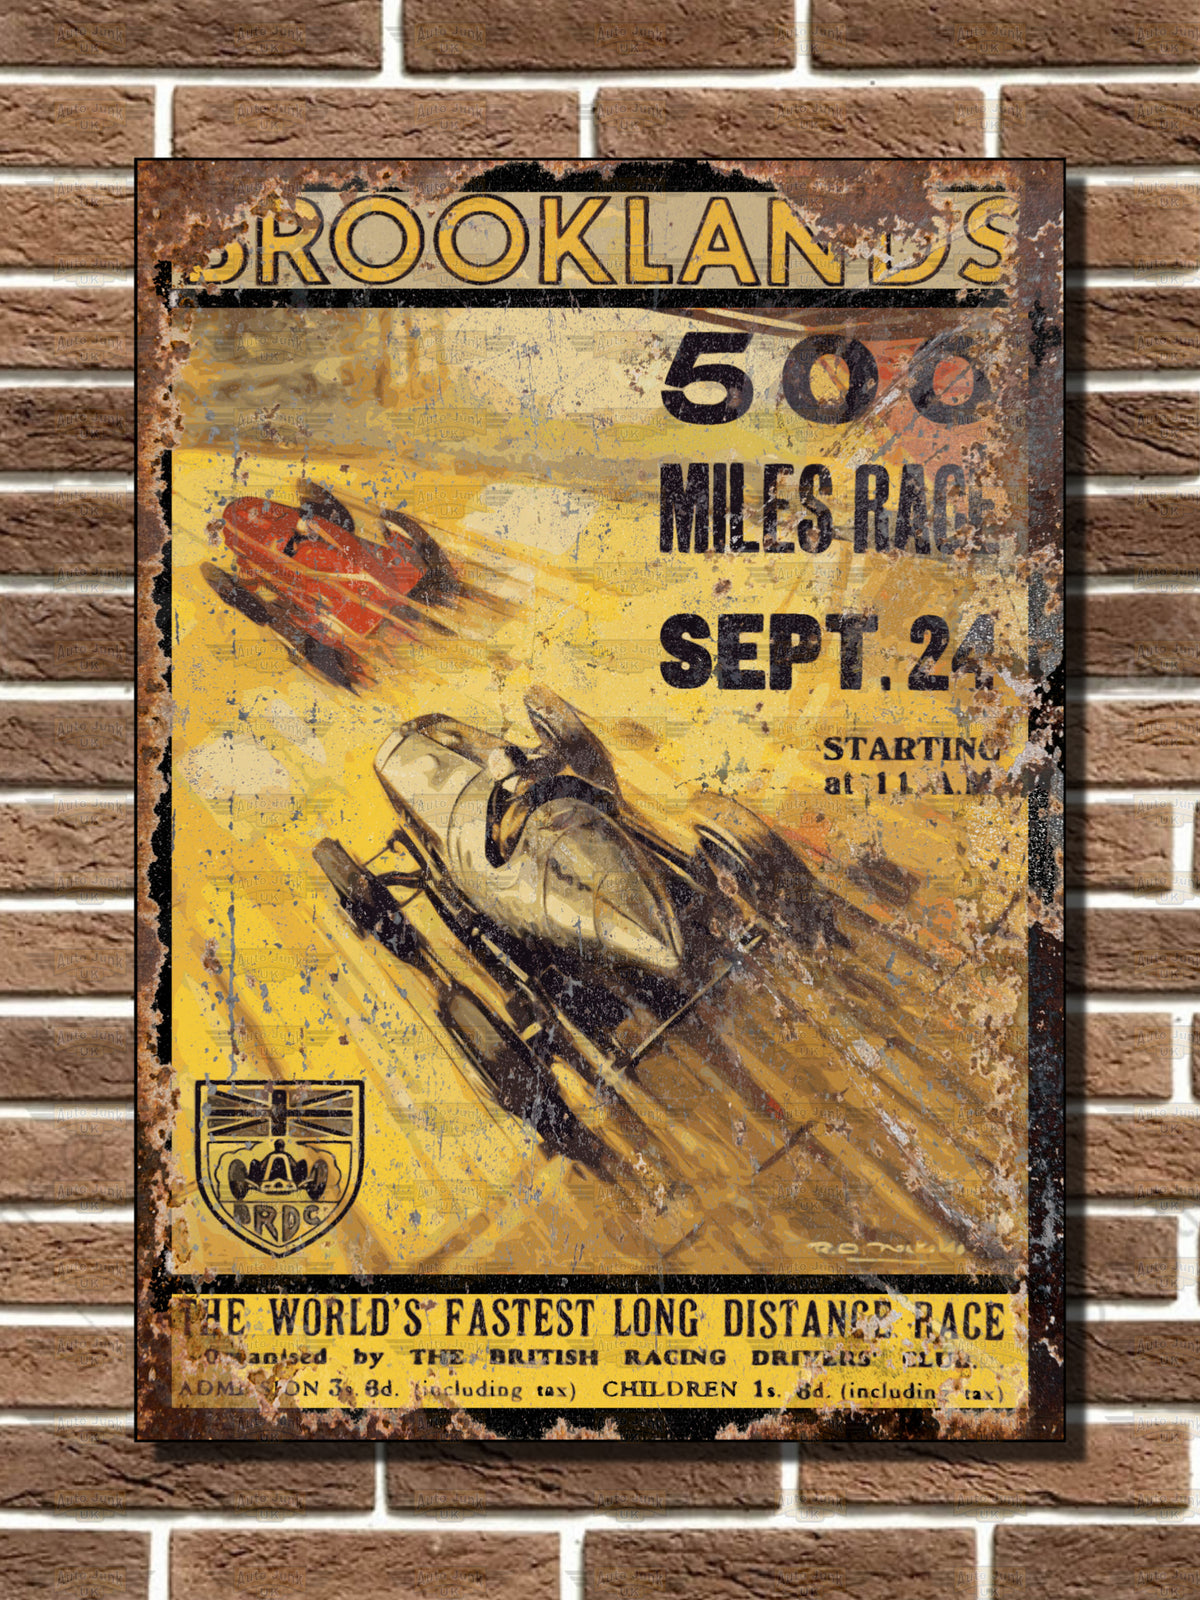 Brooklands 500 Miles Race Metal Sign